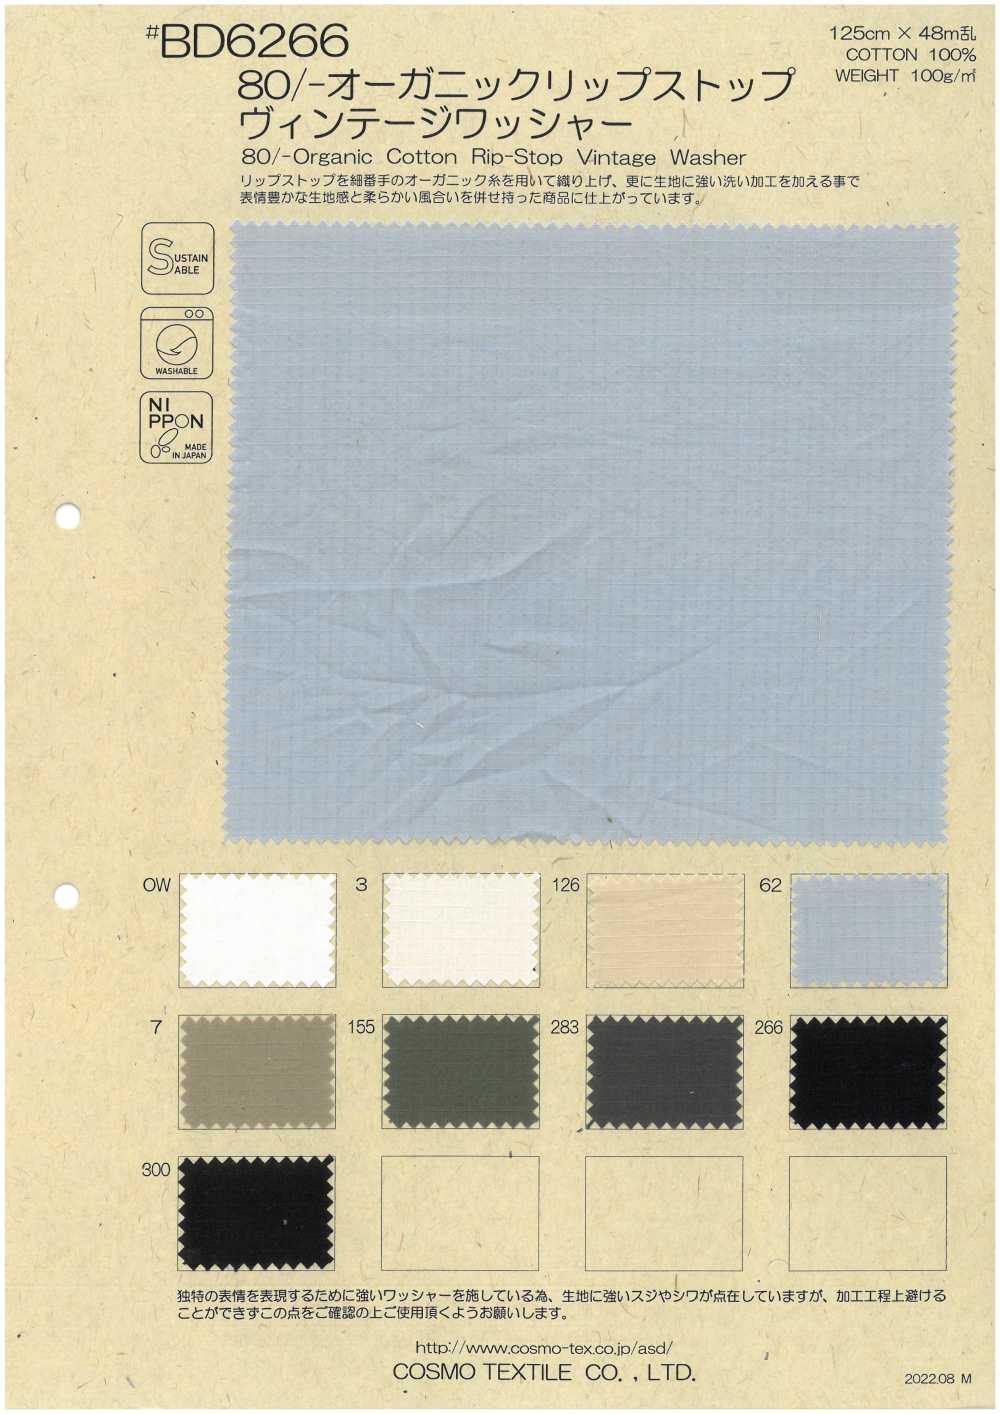 BD6266 80/- Máy Giặt Hoàn Thiện Bằng Vải Cotton Vải Ripstop Hữu Cơ Cổ điển COSMO TEXTILE